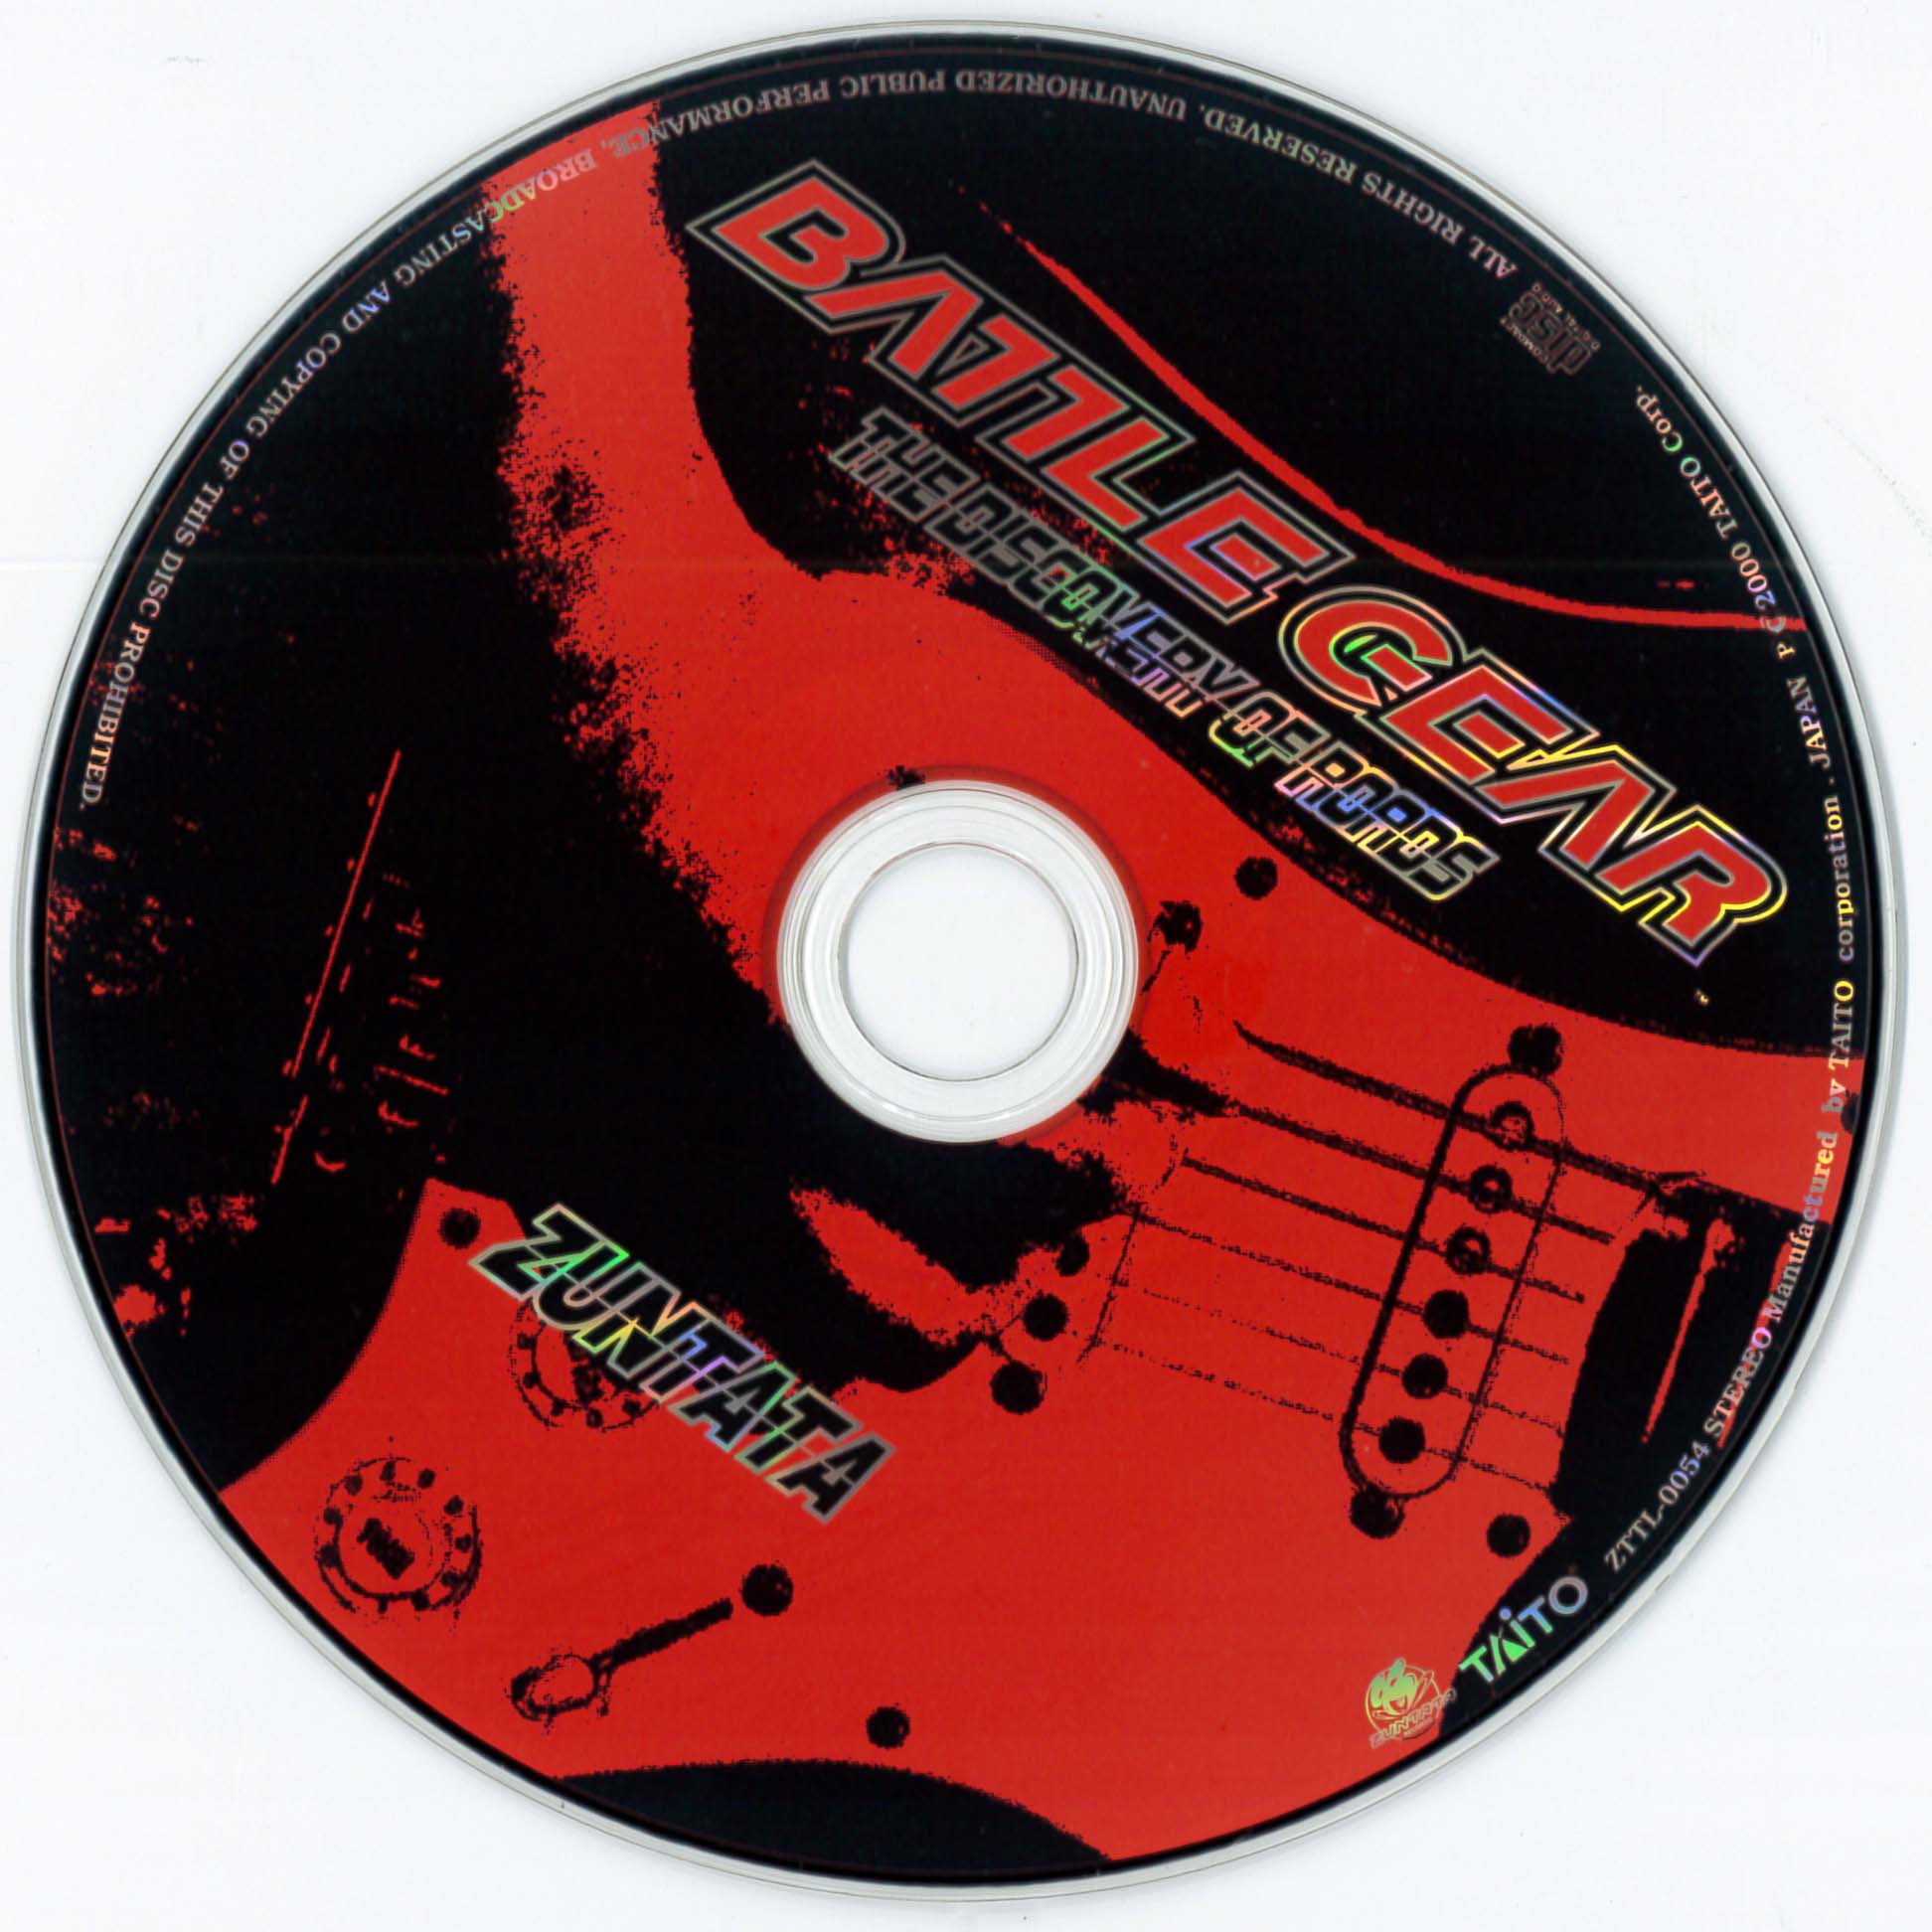 Battle Gear 1&2 (2000) MP3 - Download Battle Gear 1&2 (2000 ...